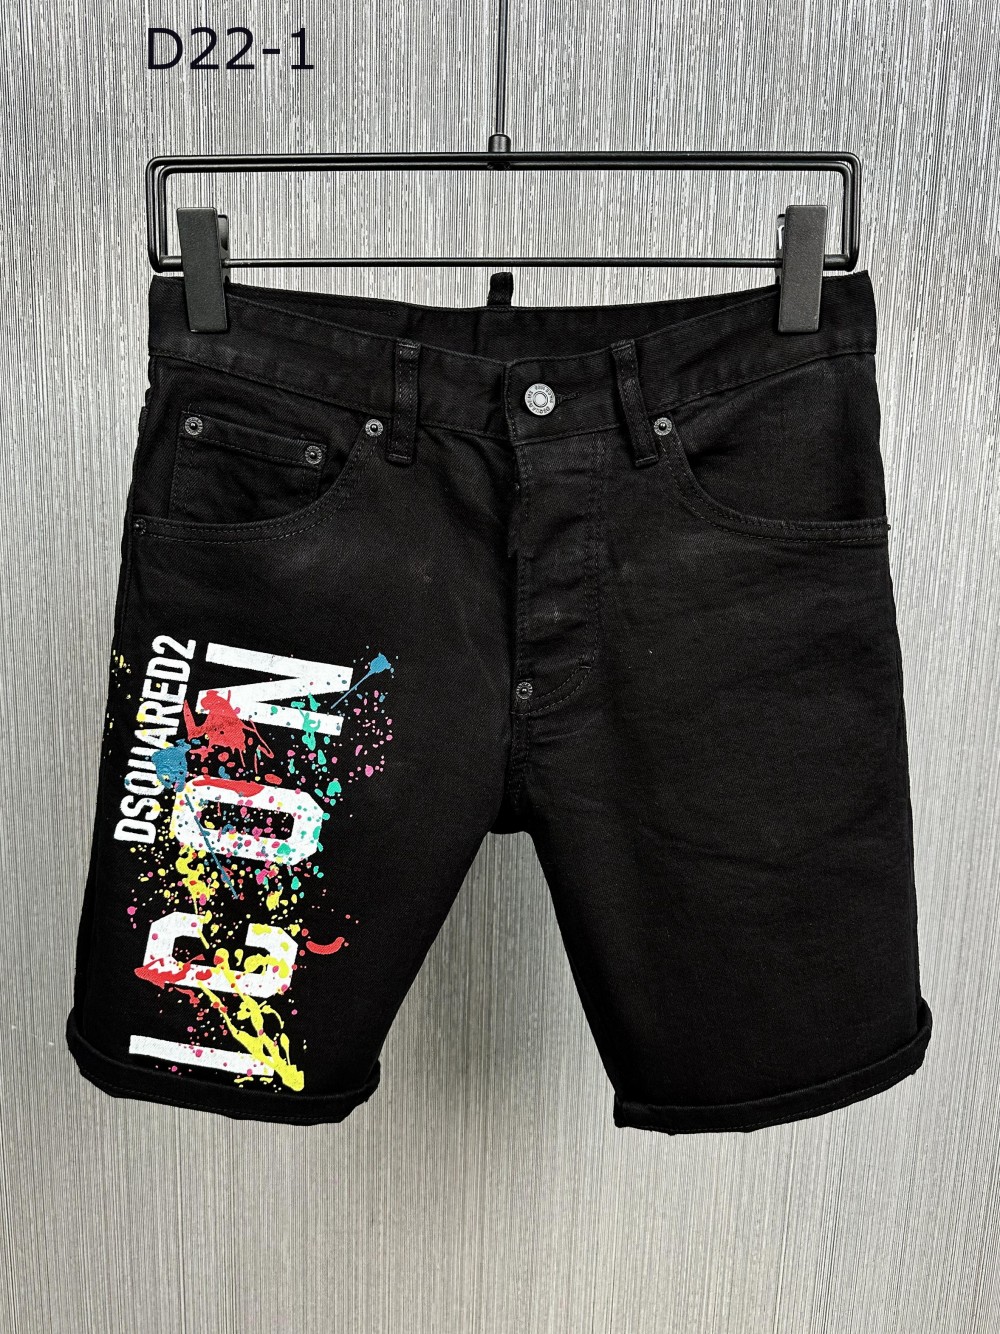 

Men Denim Cool Guy Designer Shorts Jeans Embroidery Pants Holes Trouser DSQ2 D2 Dsquared2 Dsquared 2 Italy Size -54 #D22-1, D22-1